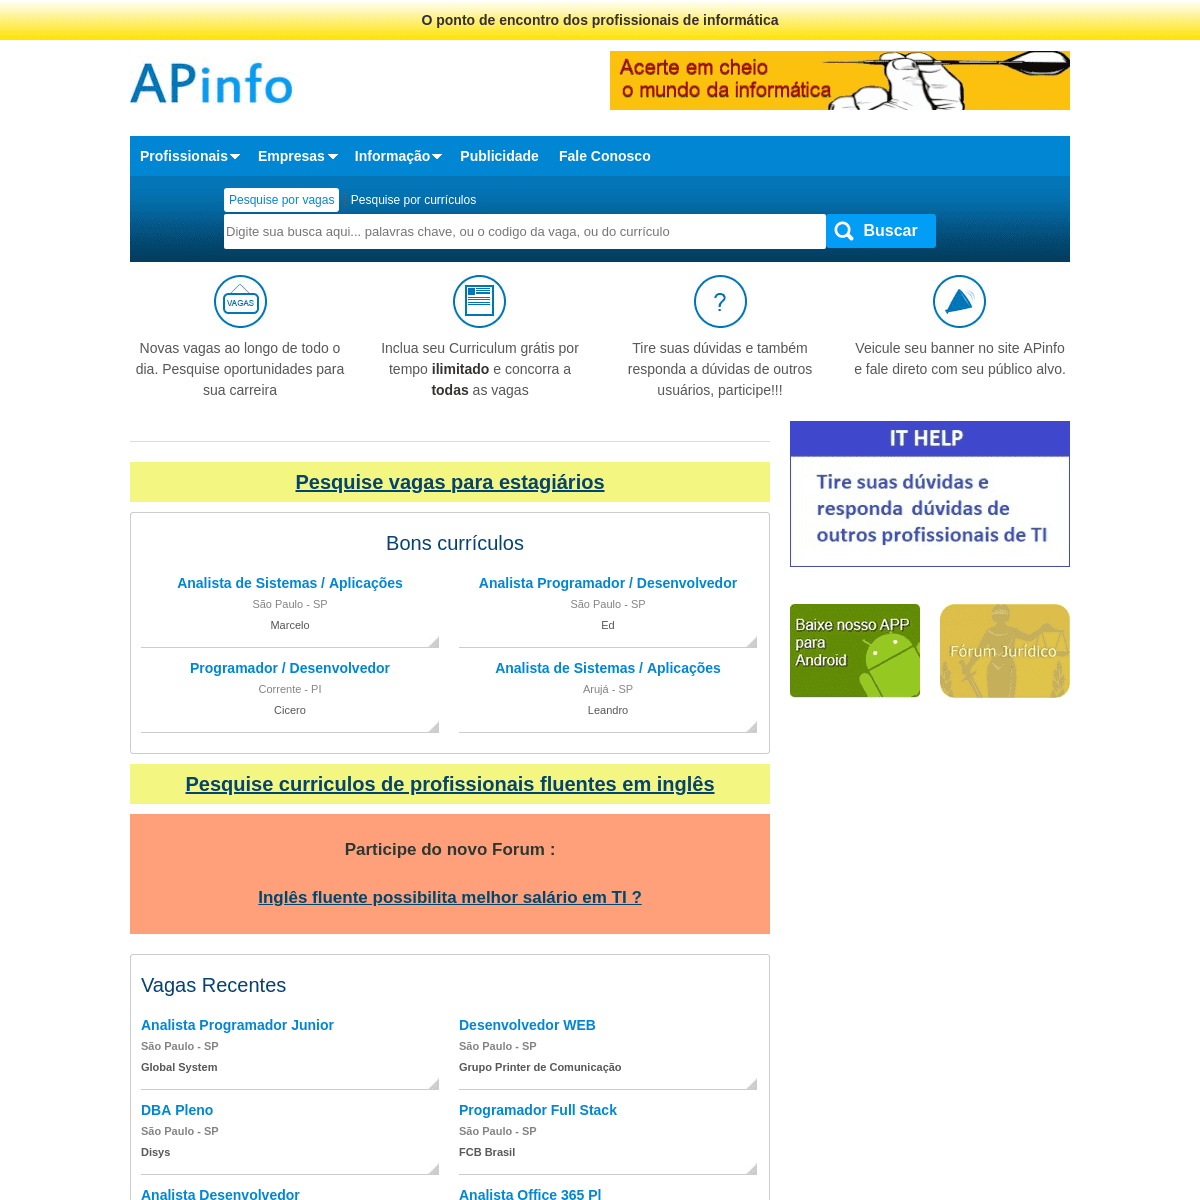 APinfo - O ponto de encontro dos profissionais de informática